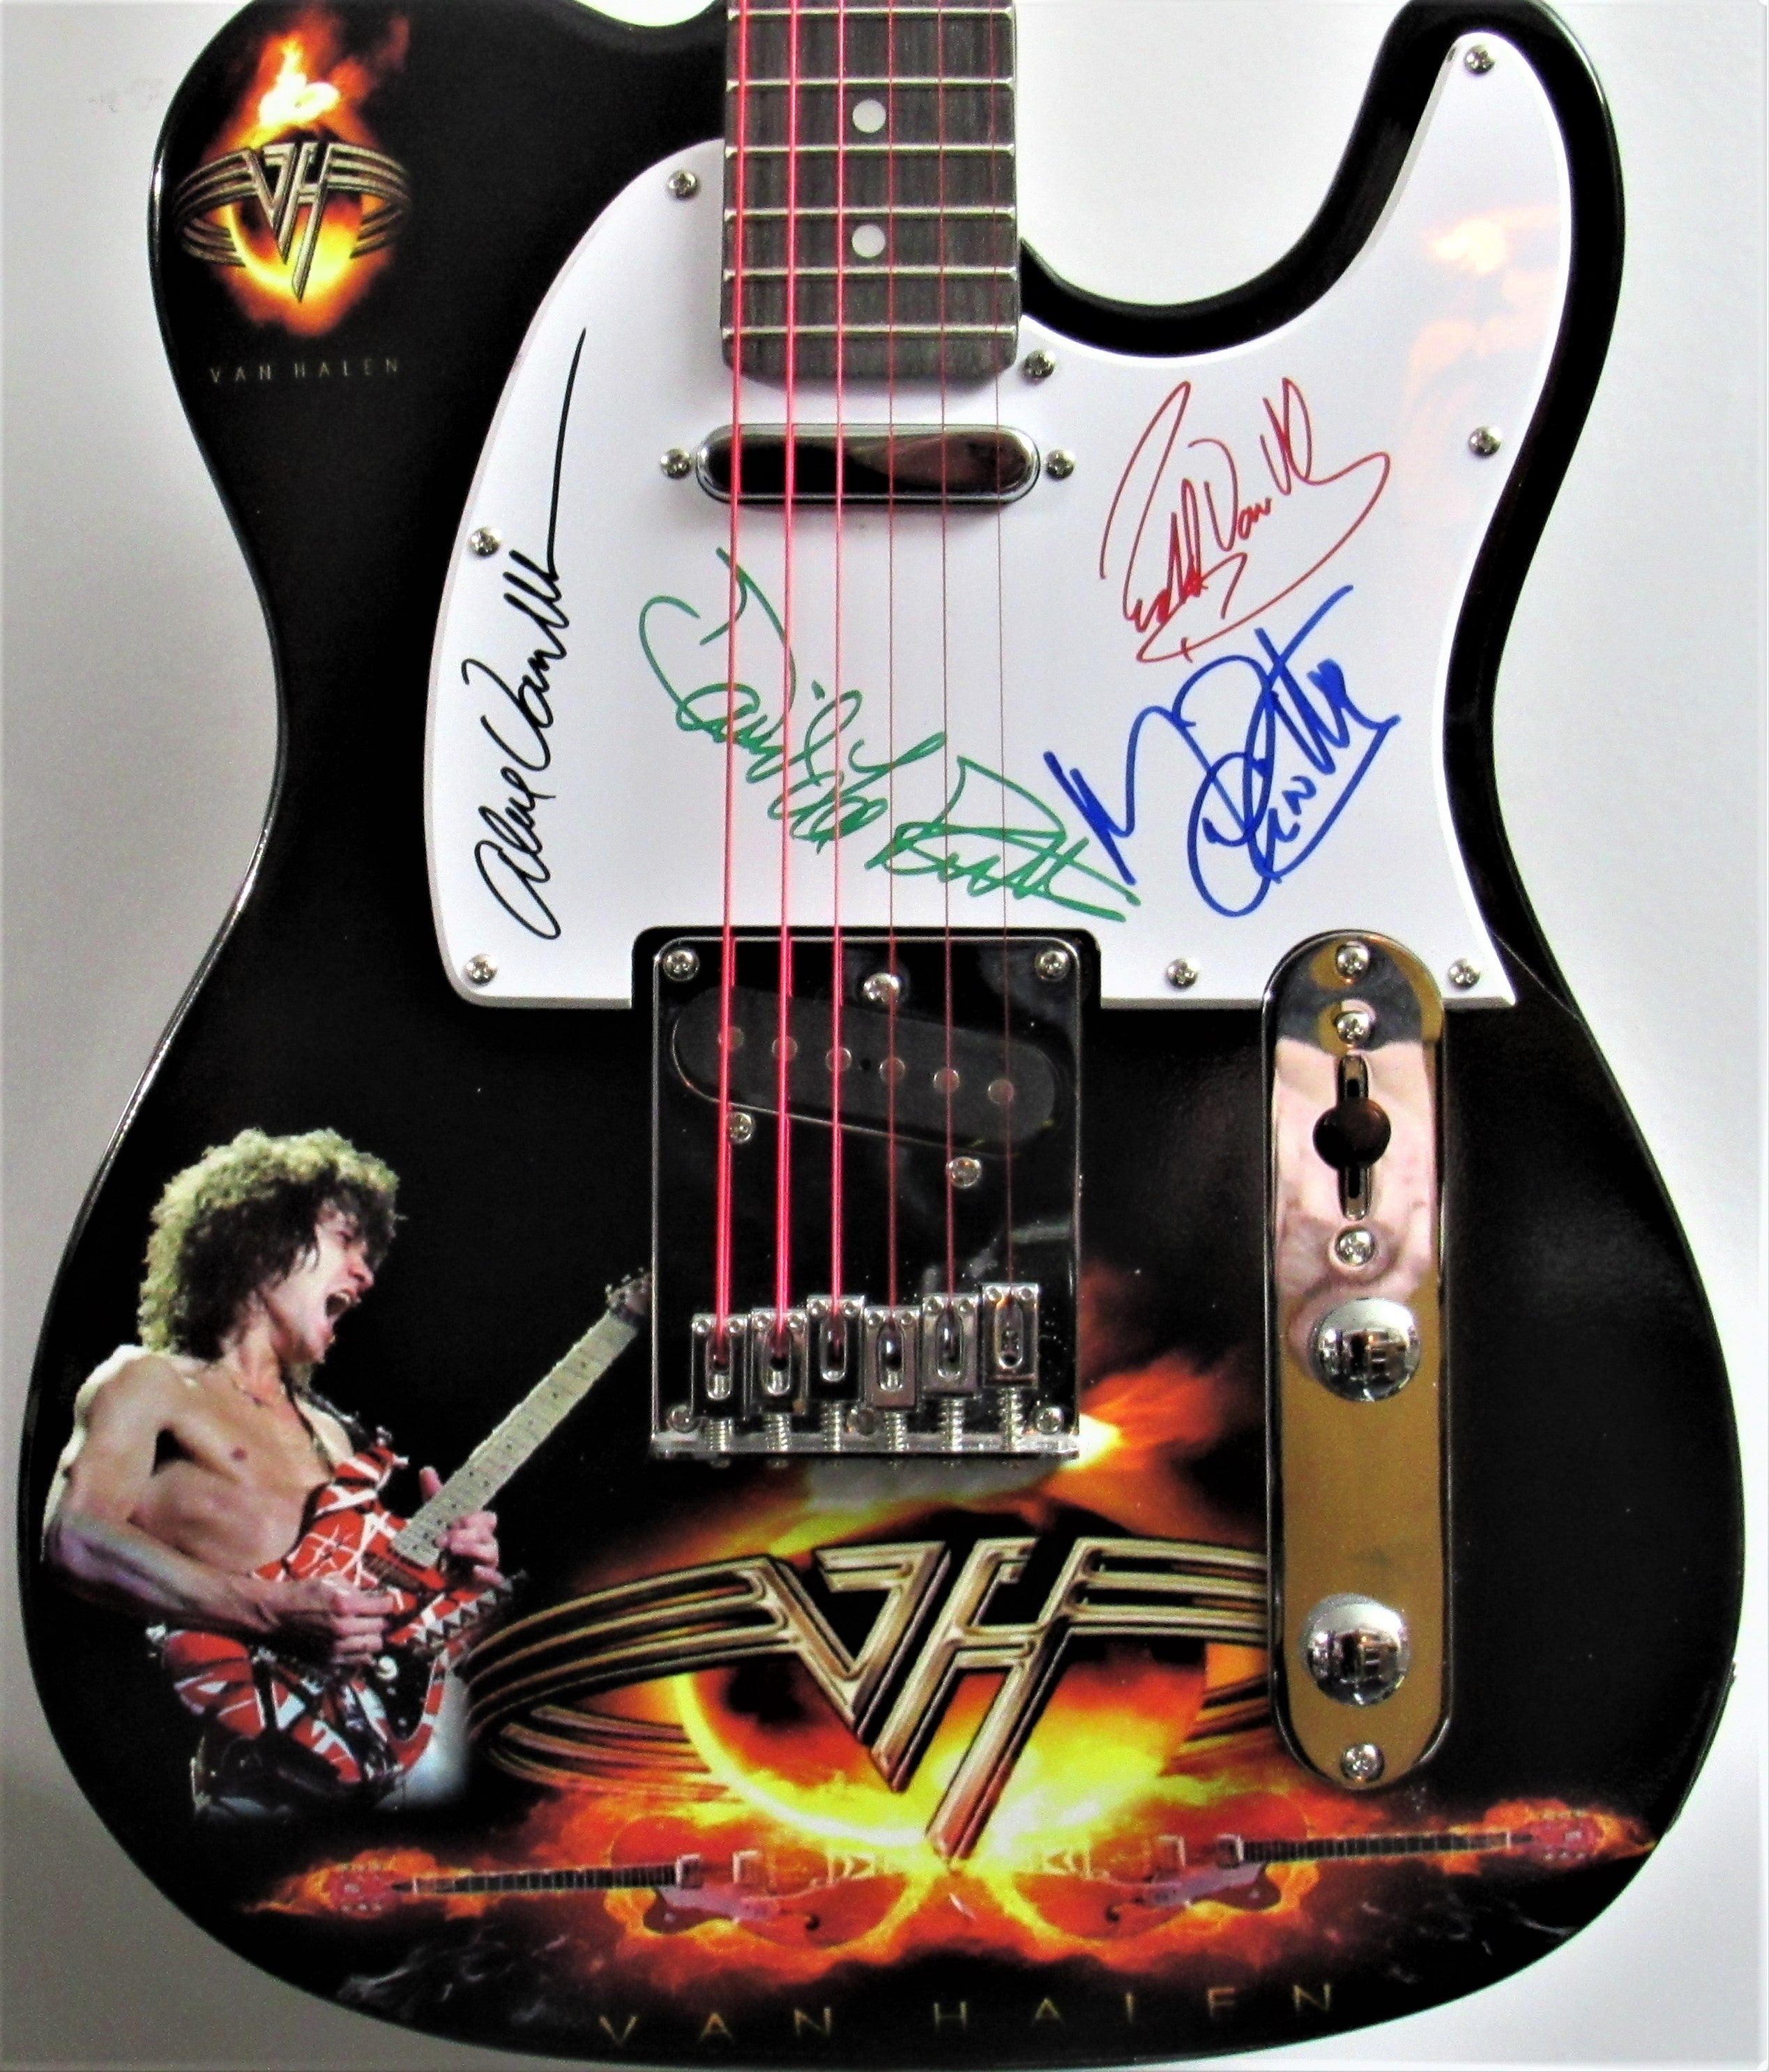  Van Halen (S/T) first album - Van Halen II *Vinyl Lp both Los  Angeles Pressings - auction details